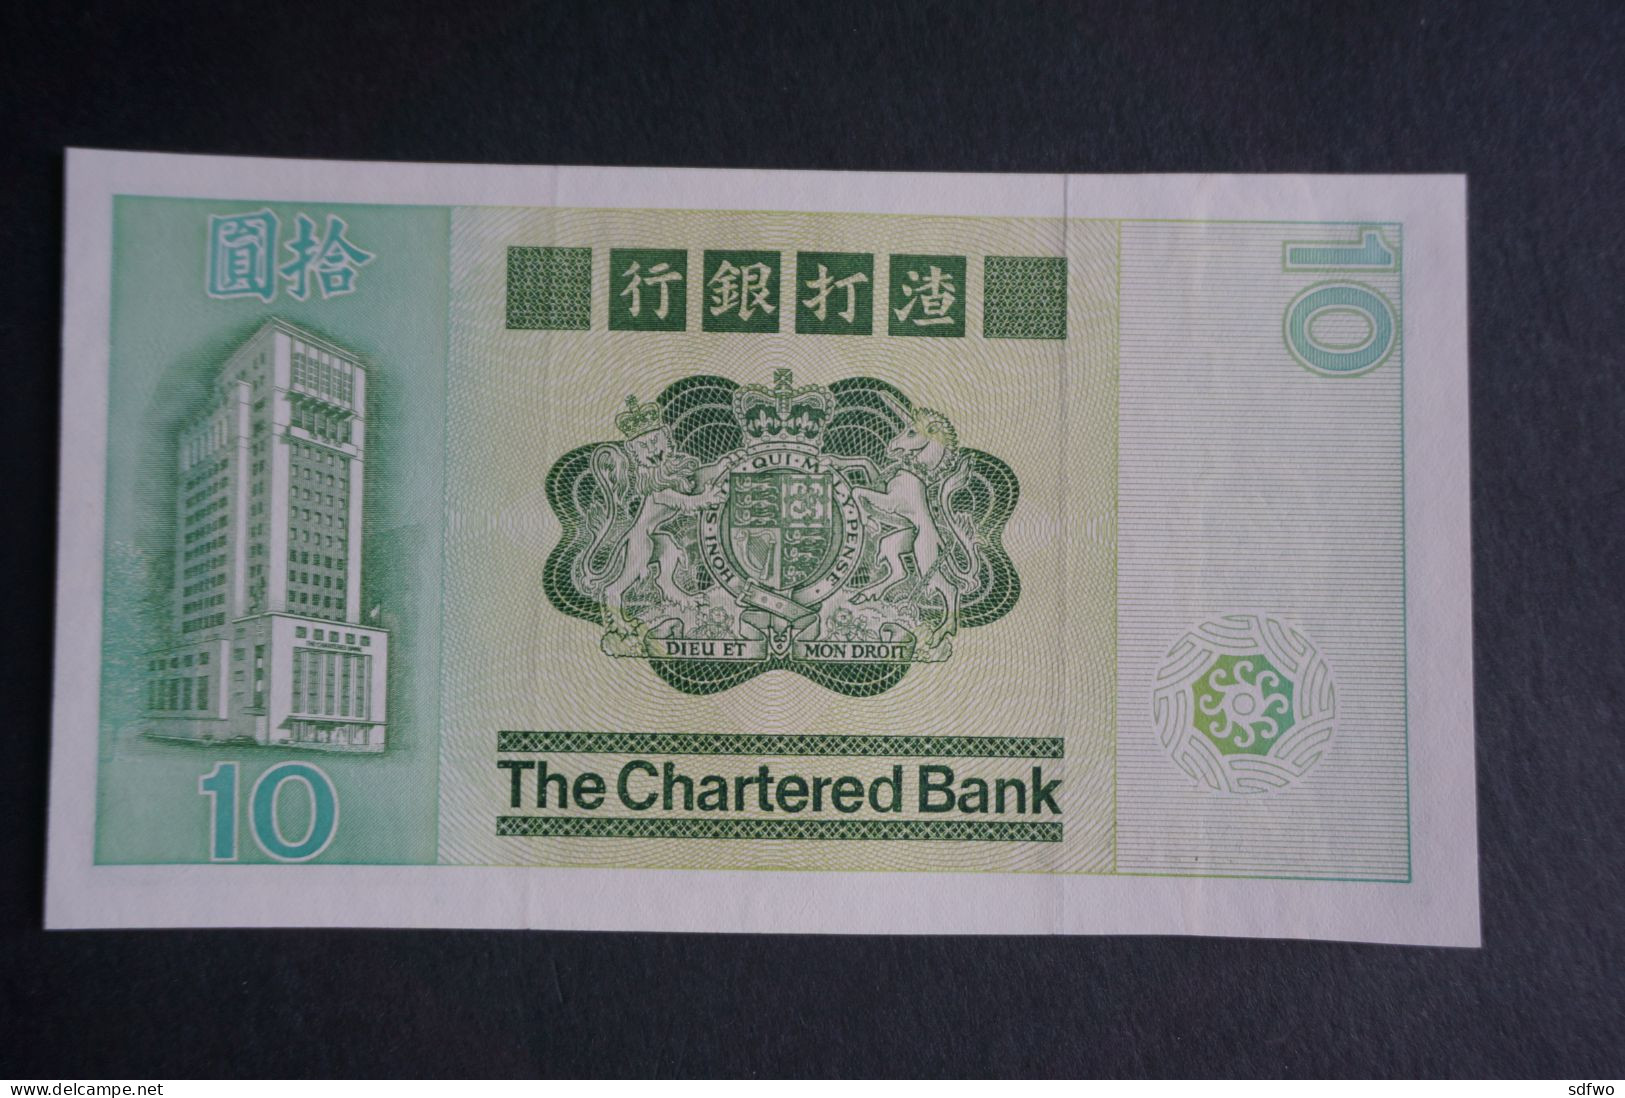 (M) 1981 HONG KONG OLD ISSUE - THE CHARTERED BANK 10 DOLLARS - #DB802,208 (UNC) - Hongkong